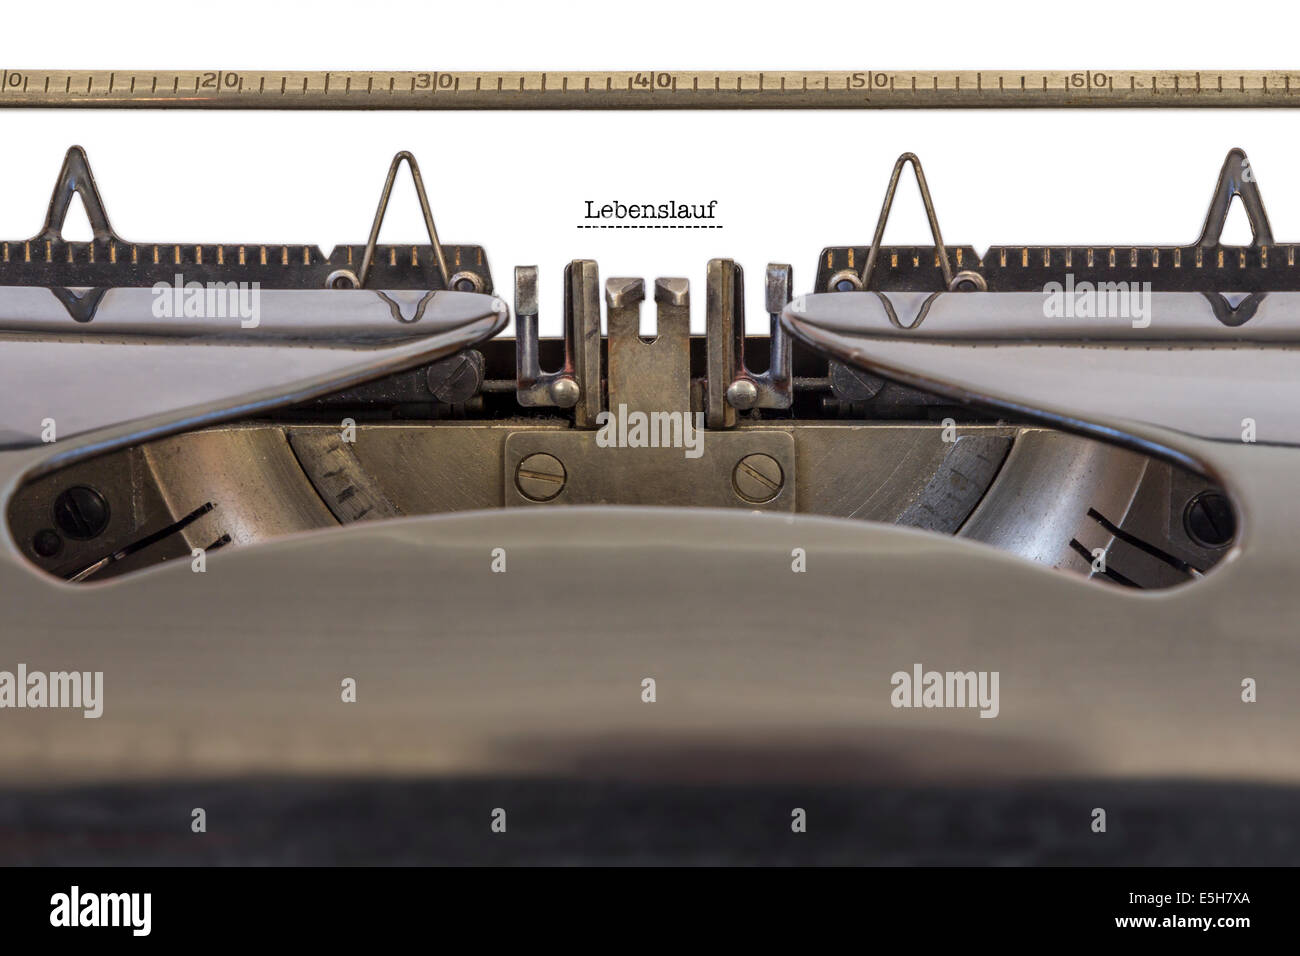 Das Wort "Lebenslauf" (deutsche Curriculum Vitae) auf einer Schreibmaschine geschrieben Stockfoto